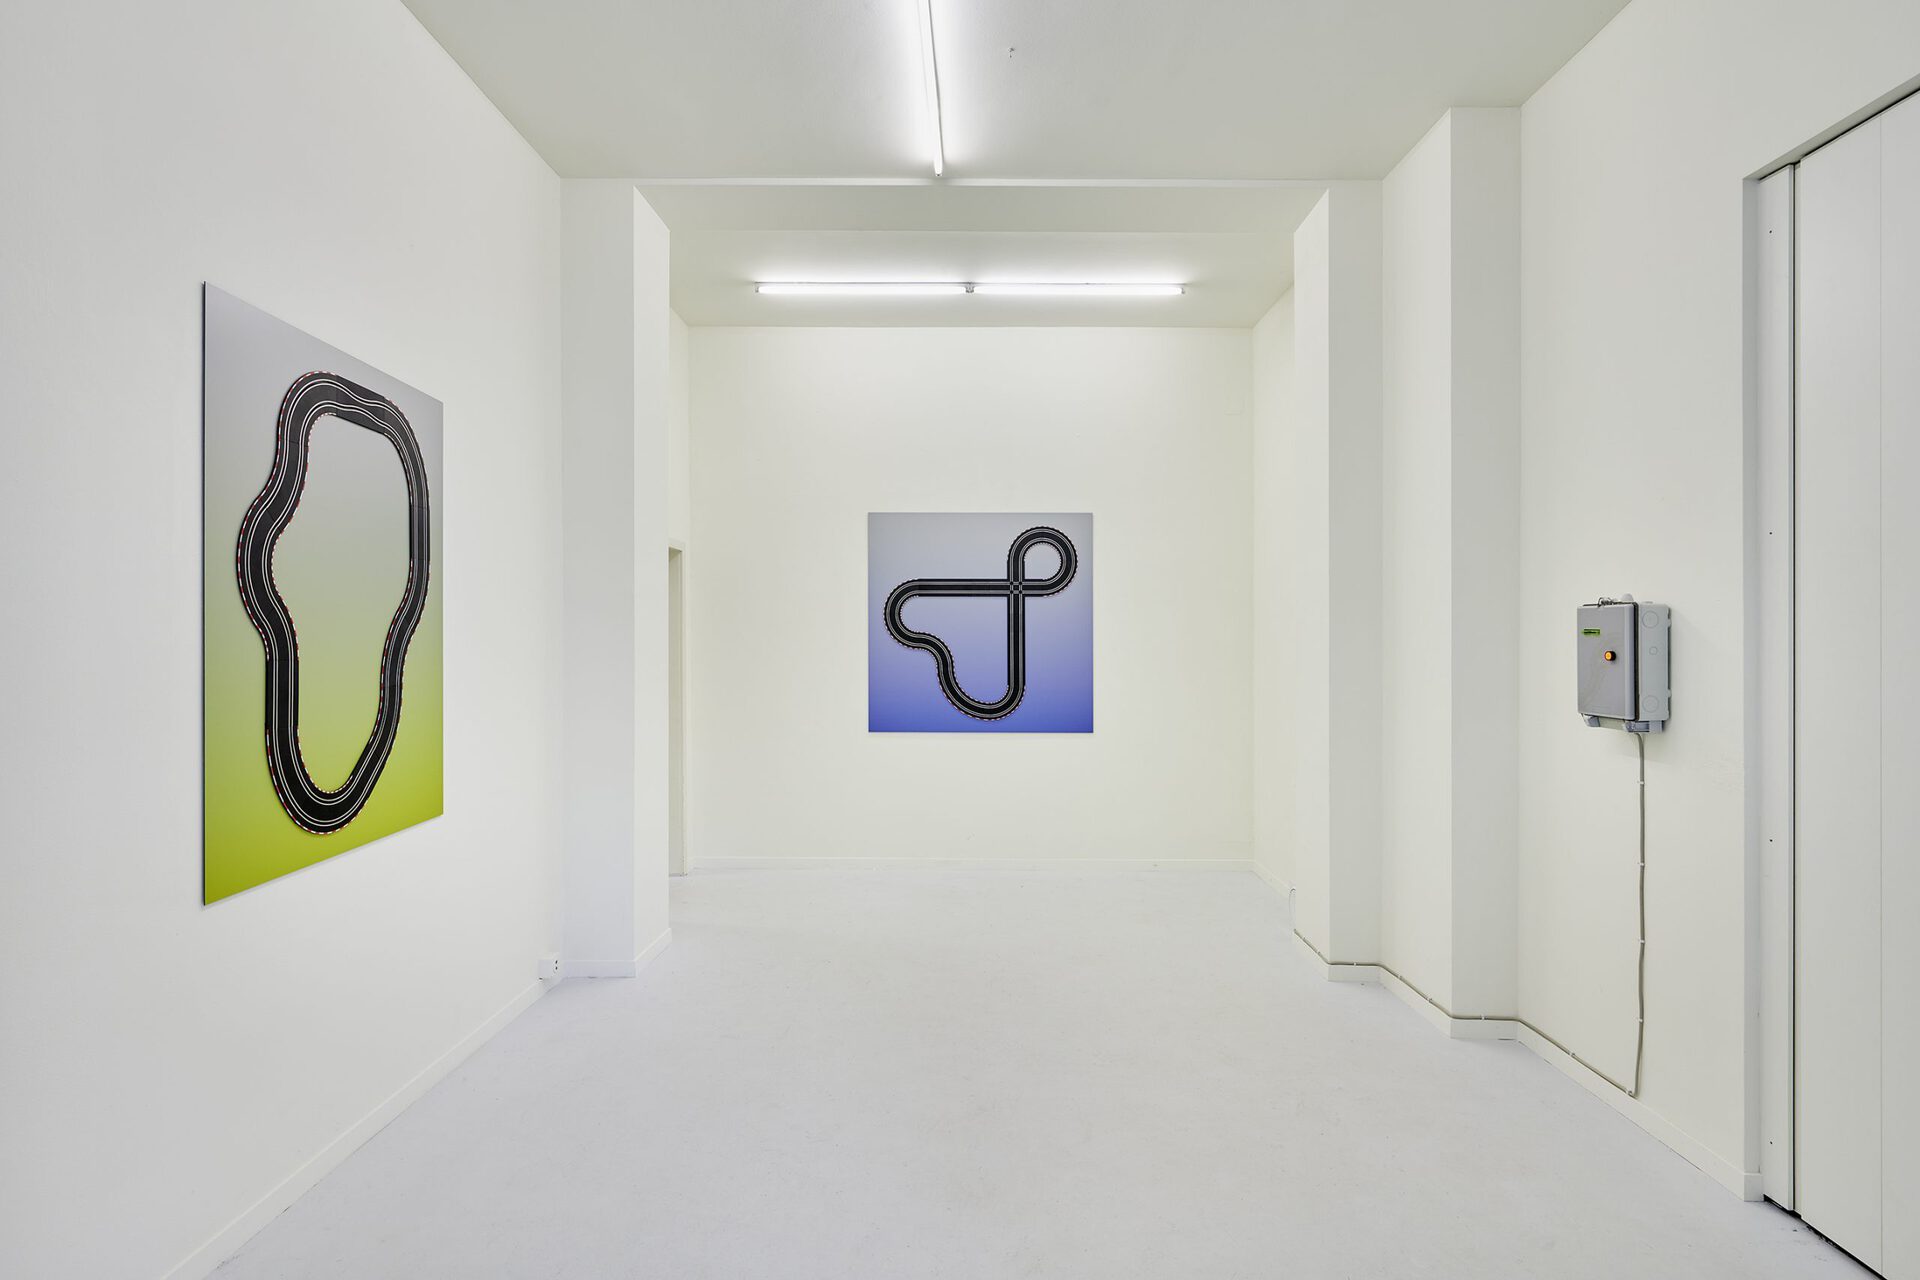 Malte Bartsch, 'Bottom Up', 2020, Installation View at Lemoyne, Zurich